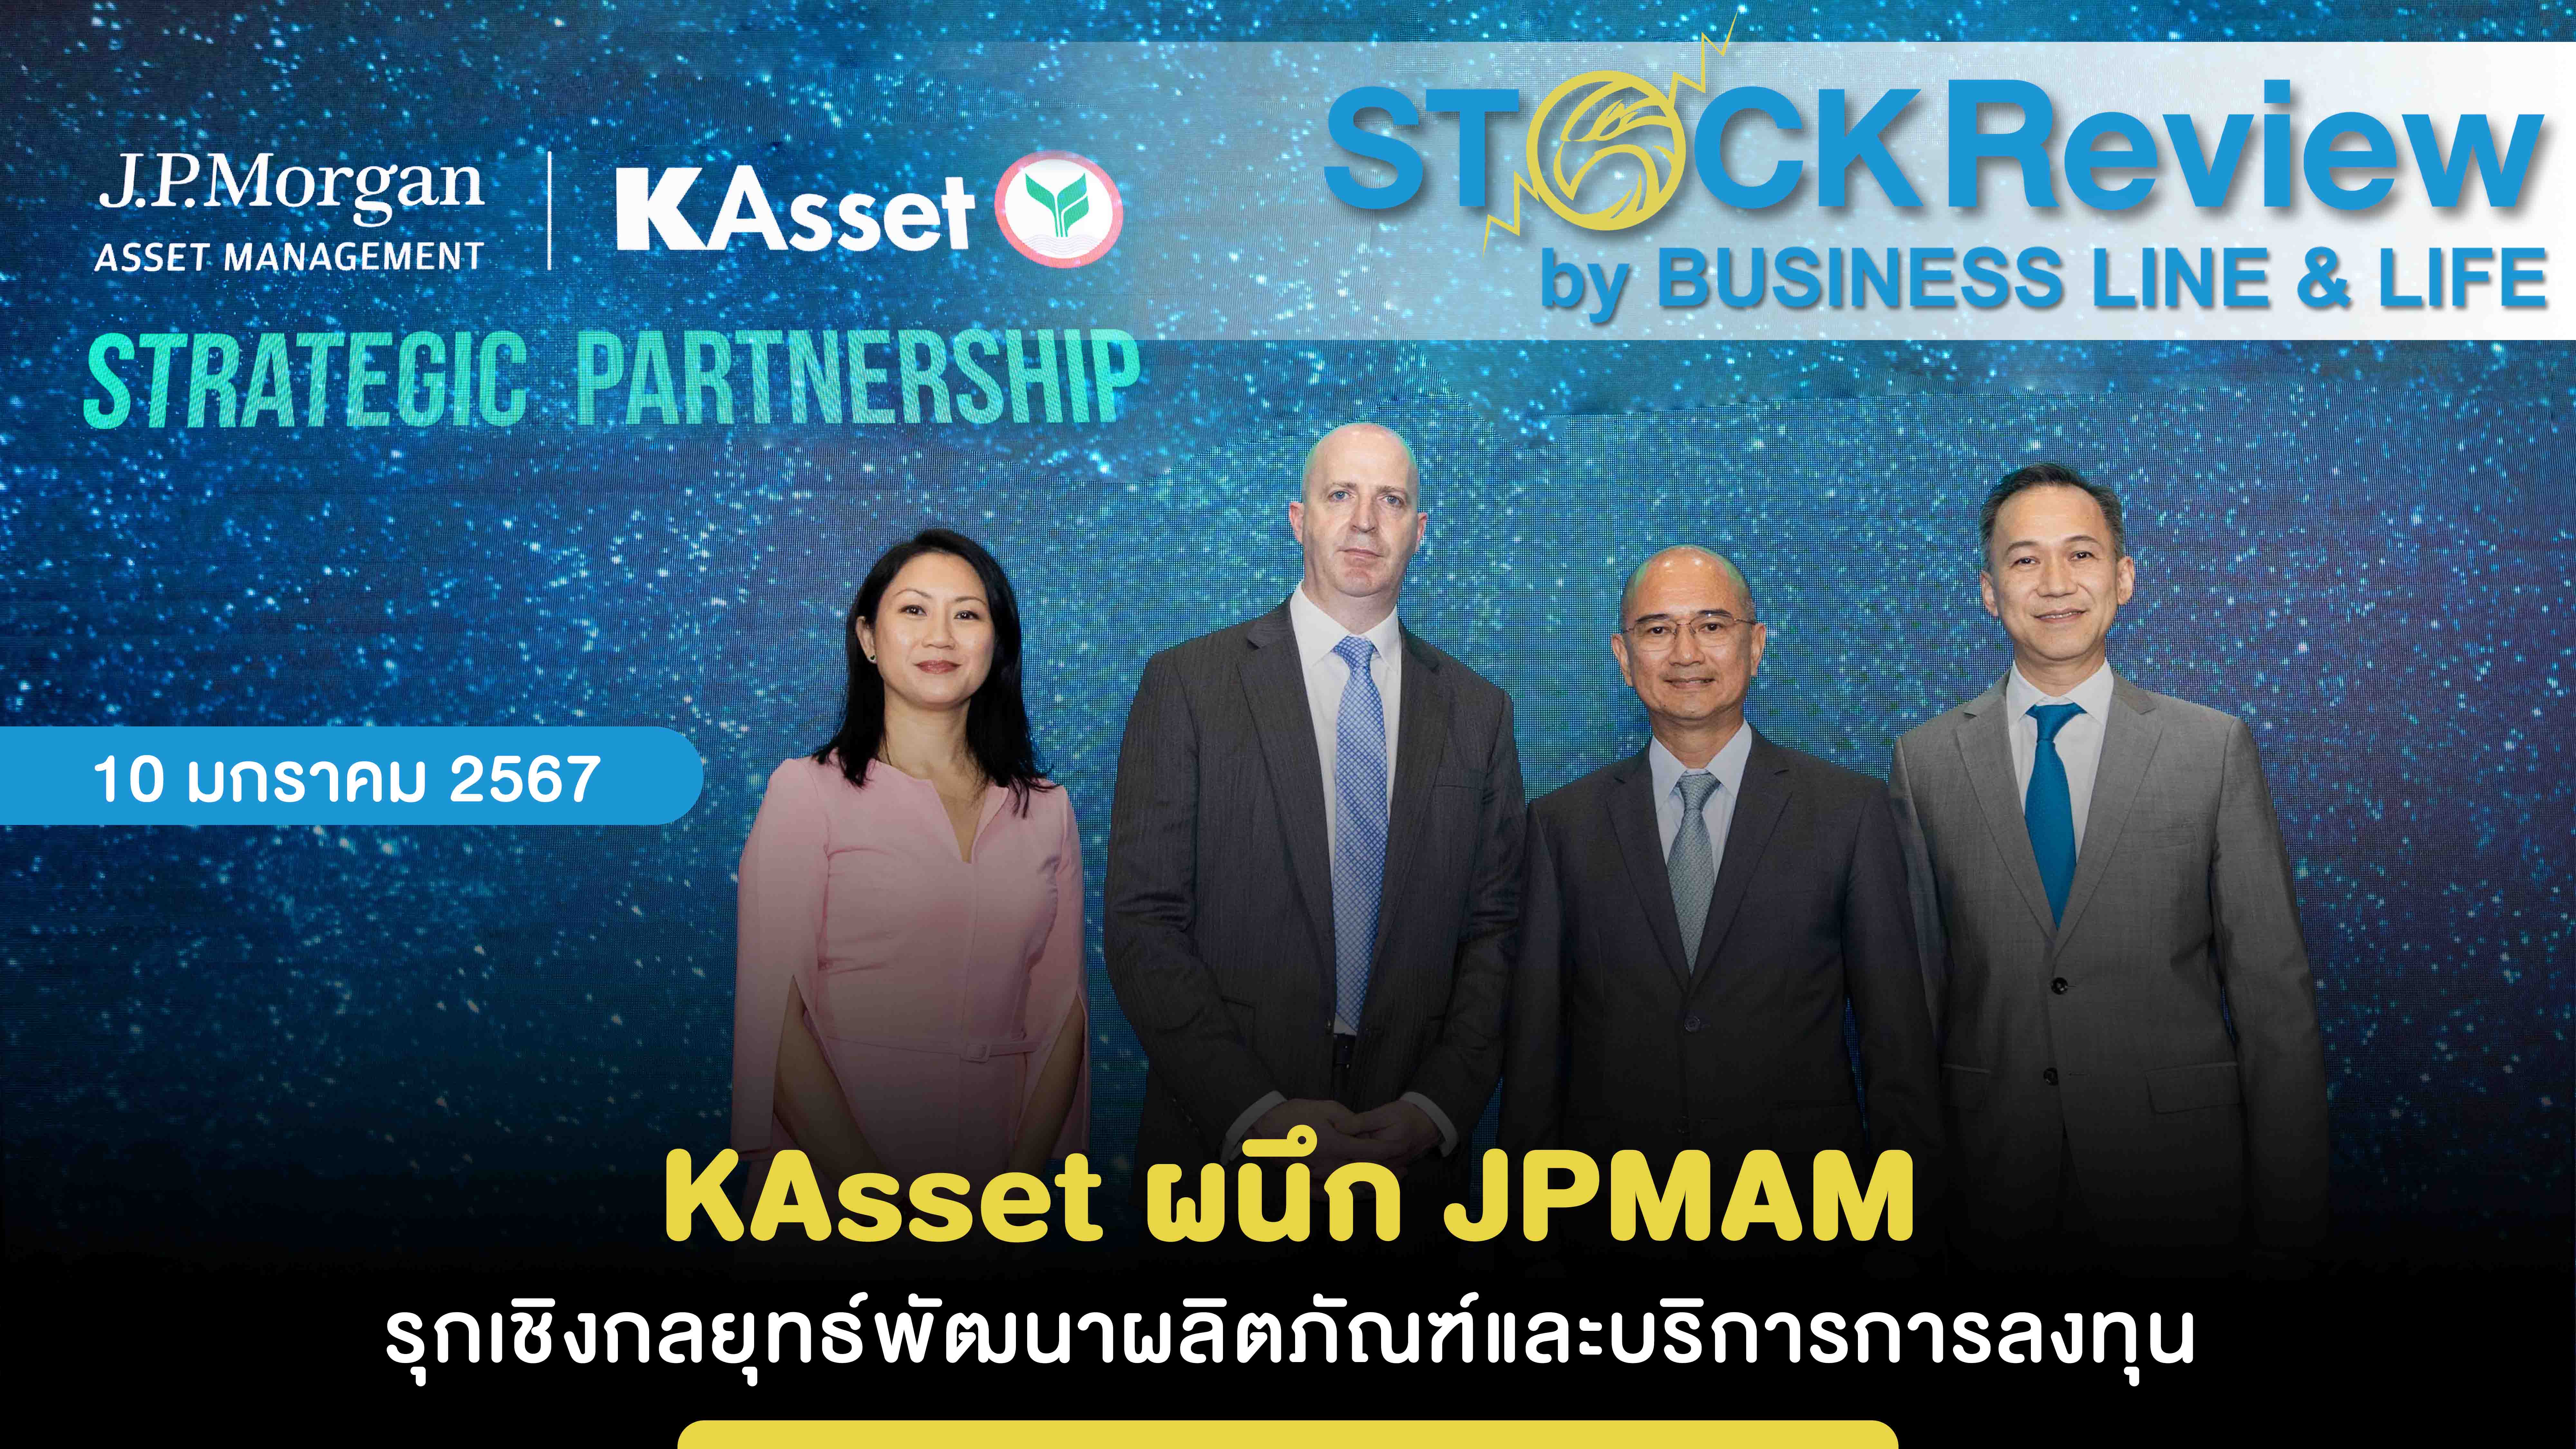 KAsset ผนึก JPMAM รุกเชิงกลยุทธ์พัฒนาผลิตภัณฑ์และบริการการลงทุน